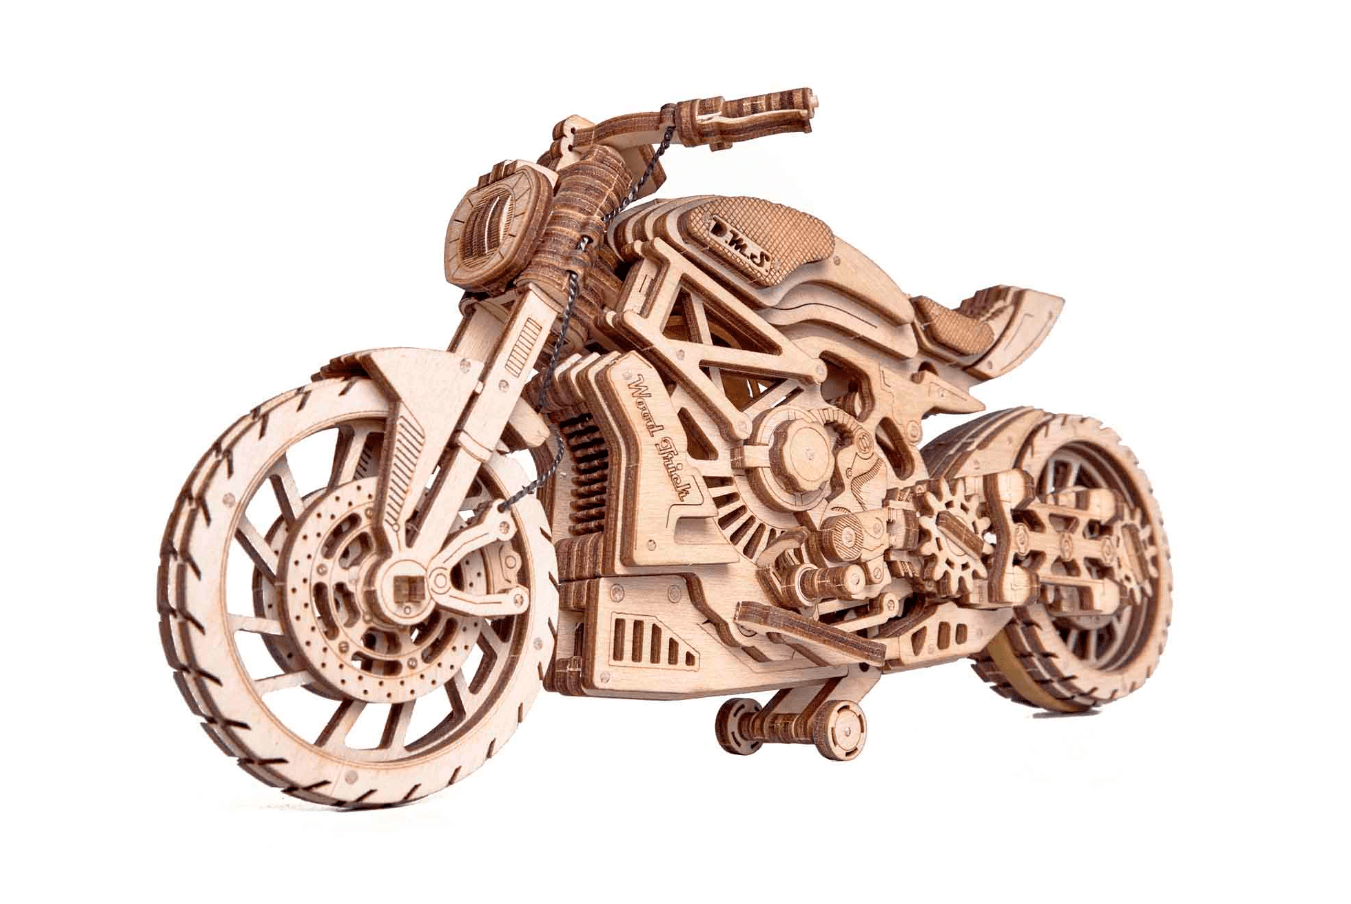 Maquette moto - 1001Hobbies, le spécialiste de la maquette de moto